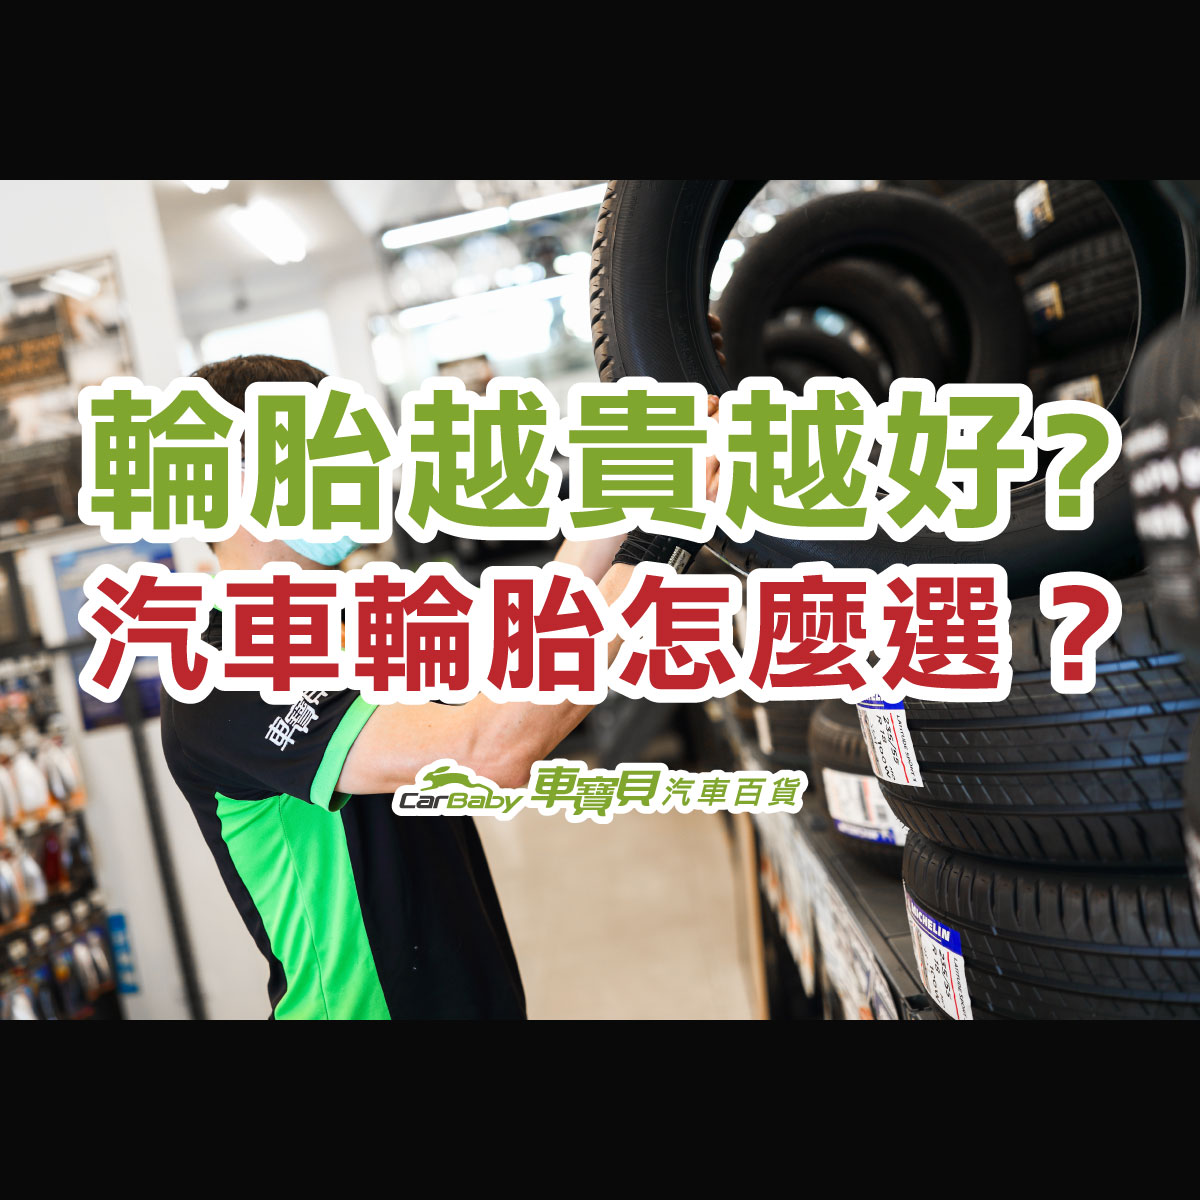 輪胎越貴越好嗎-汽車輪胎怎麼選-精選 車寶貝汽車百貨 台中汽車百貨 台中輪胎 輪胎行